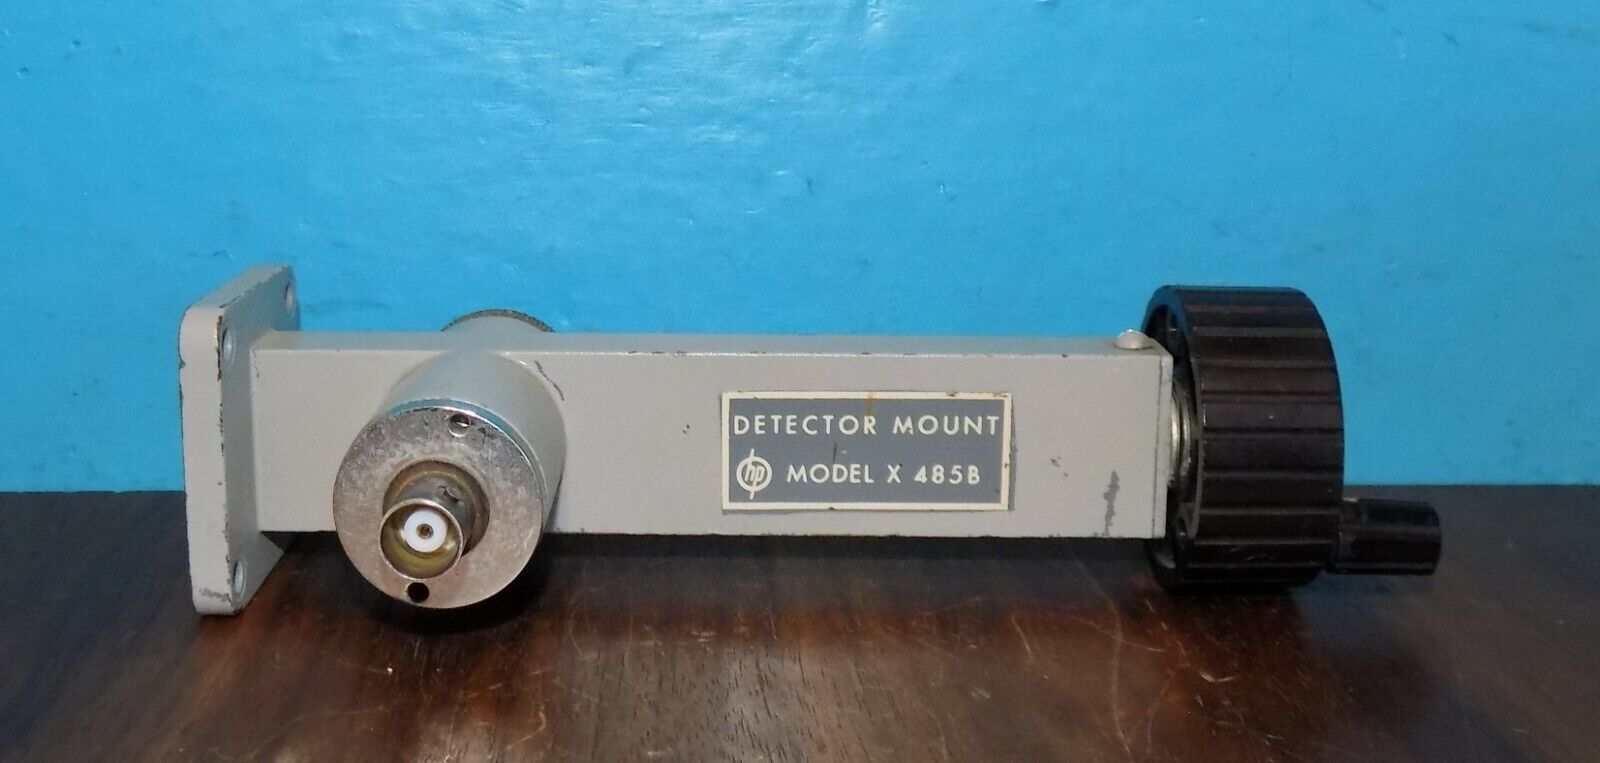 Hp Hewlett Packard X-485b Detector Mount Wr-90 8-12.4ghz Free Ship